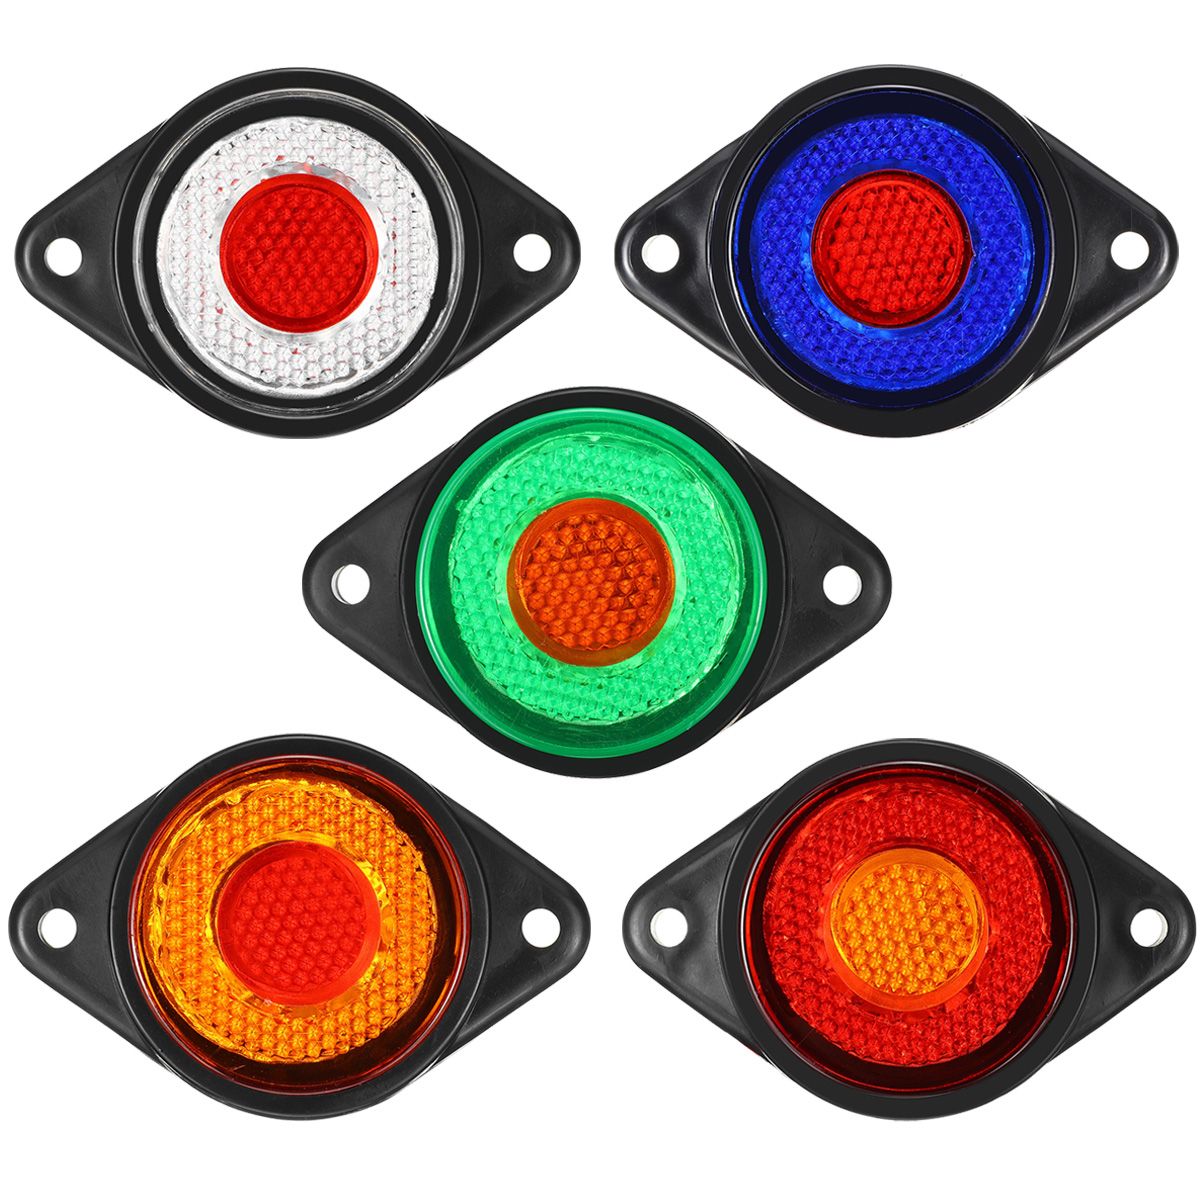 2PCS-24V-8LED-2-Color-Trailer-Side-Marker-Lights-Truck-Caravan-Stop-Indicator-Lamp-1742176